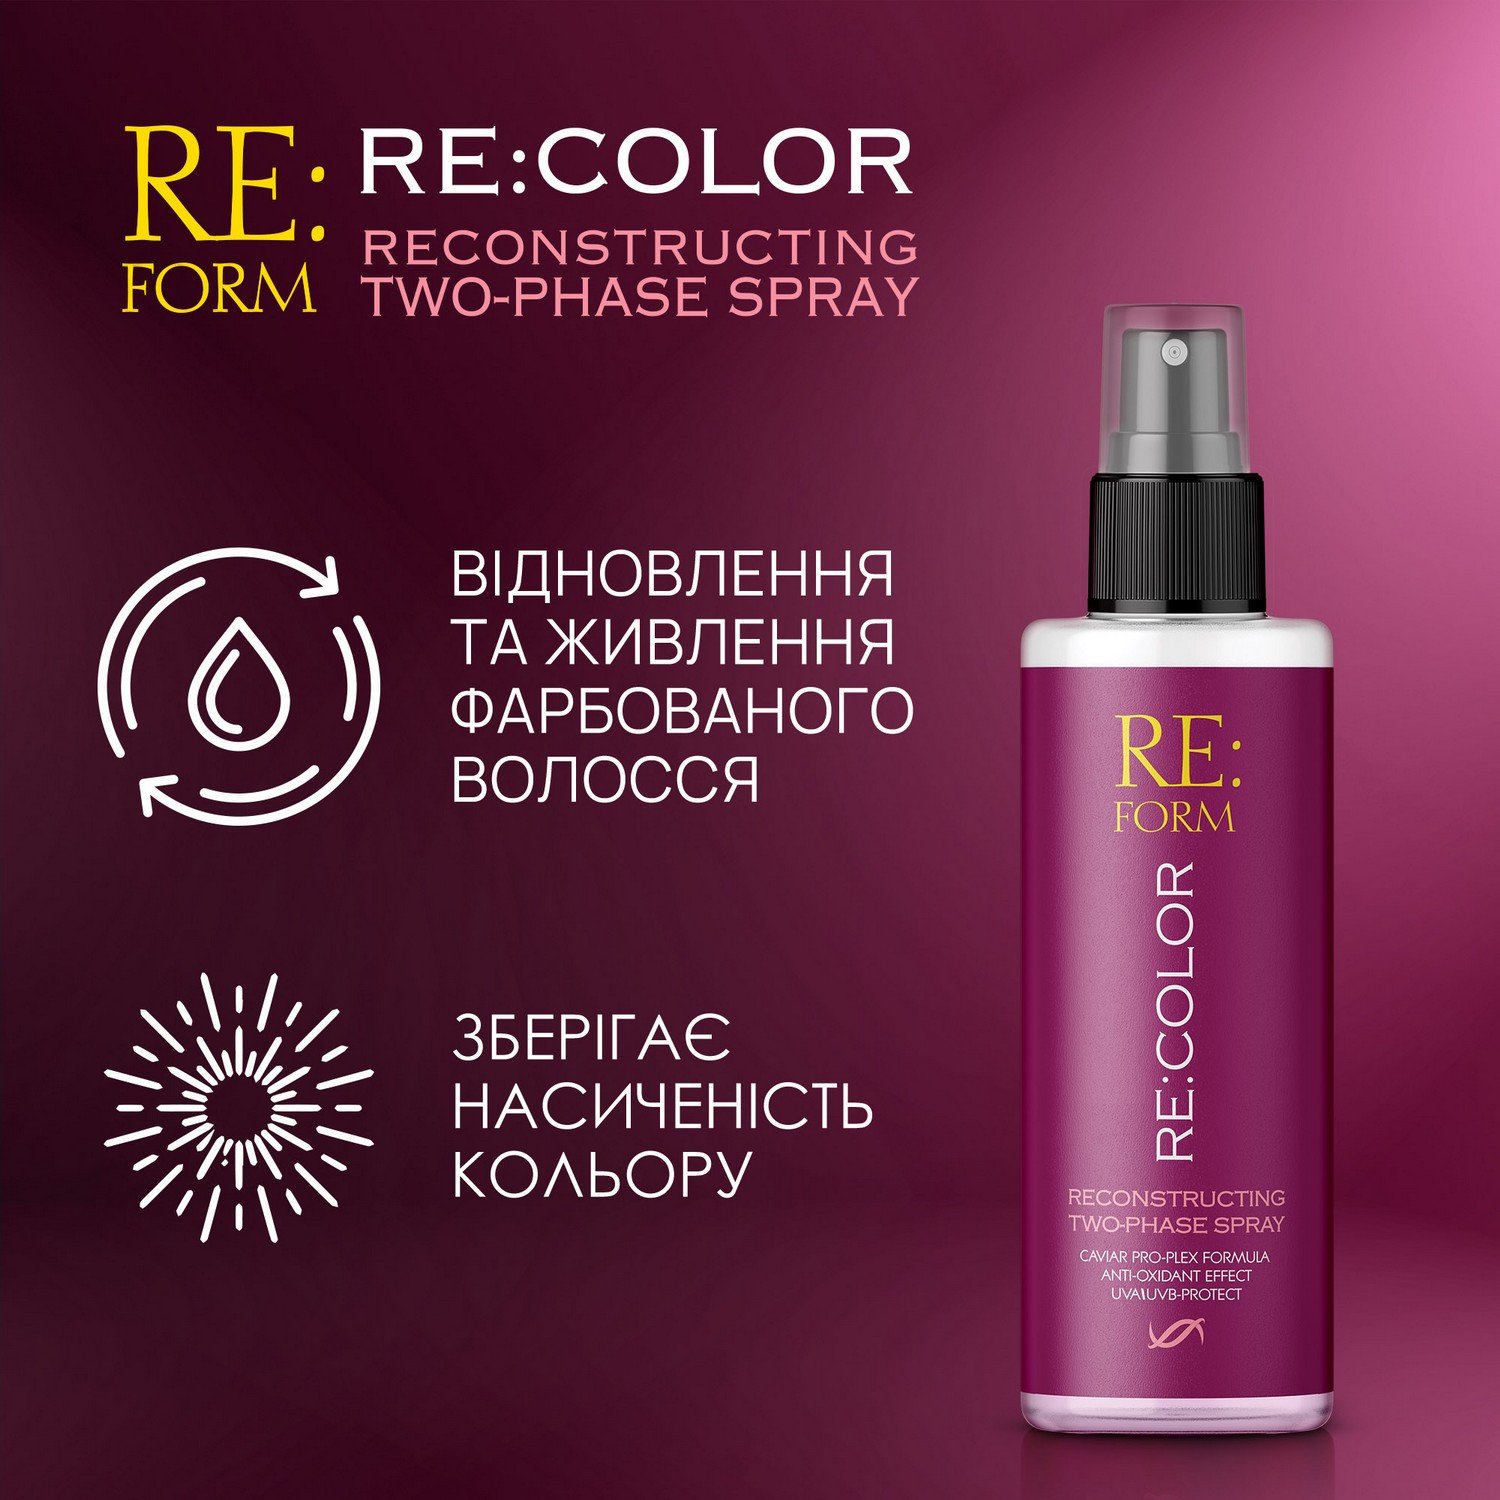 Реконструирующий двухфазный спрей Re:form Re:color Сохранение цвета и восстановление окрашенных волос, 200 мл - фото 4